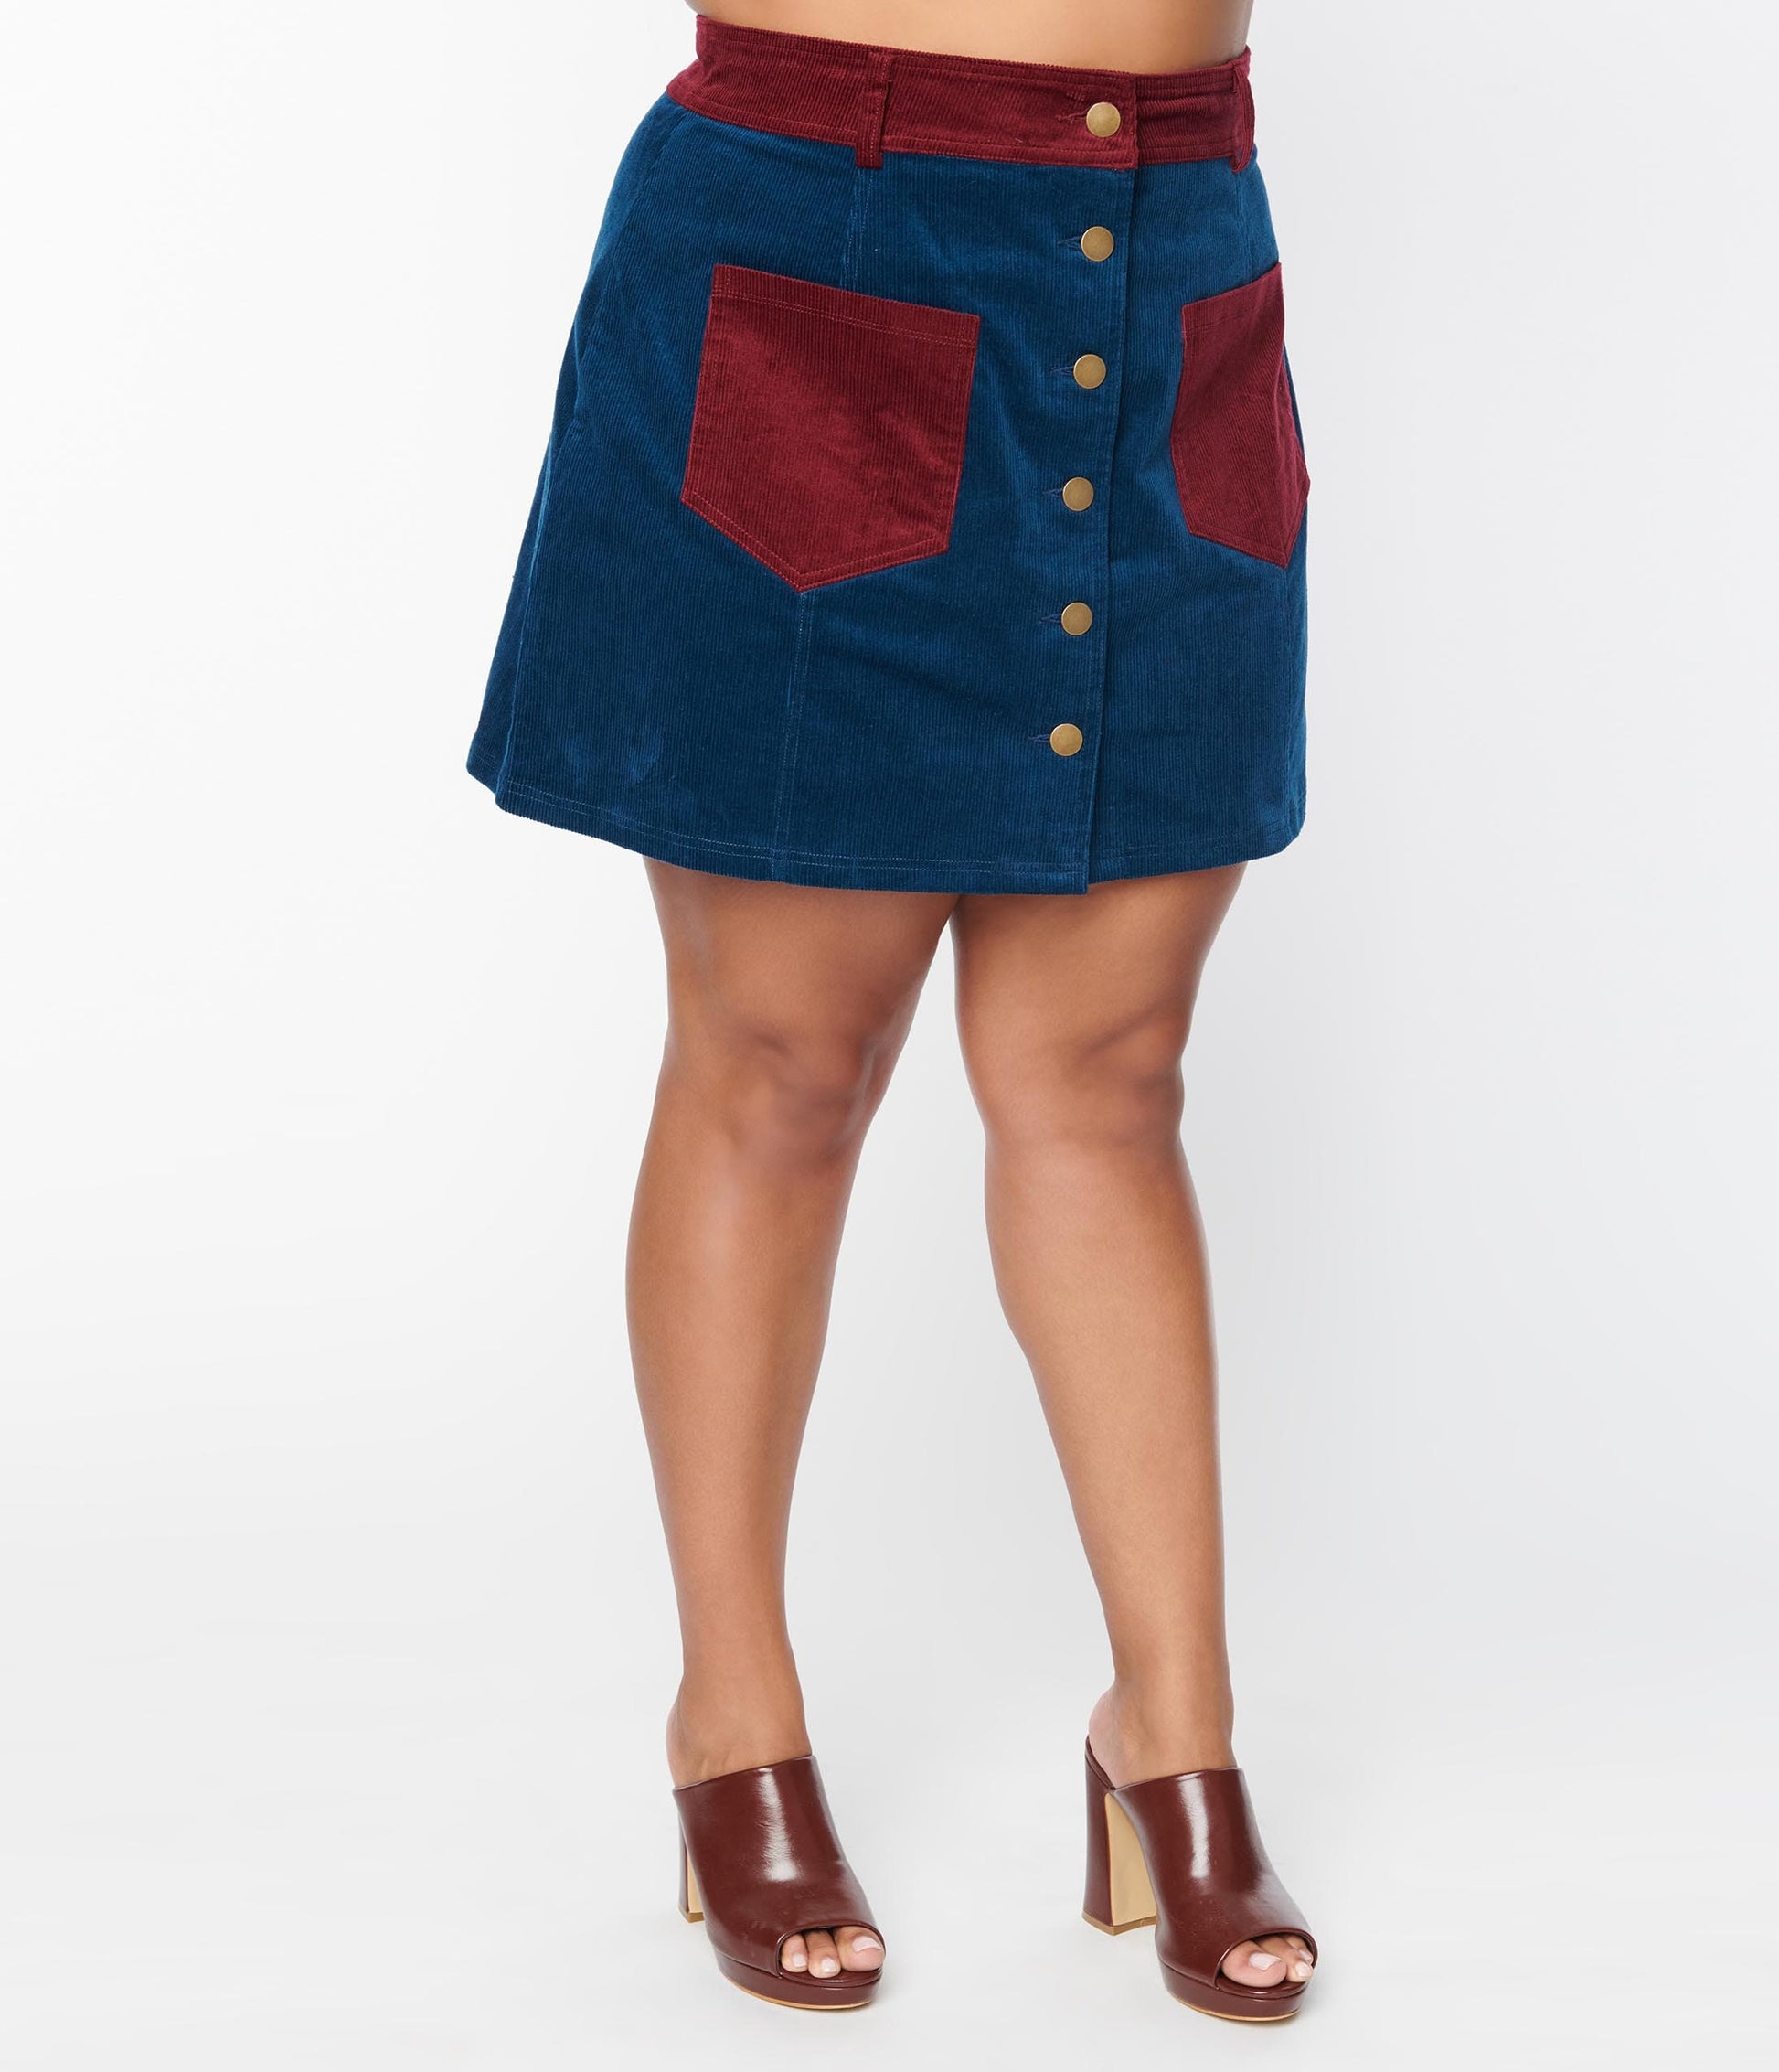 Smak Parlour Plus Size Navy & Burgundy Corduroy Button Mini Skirt